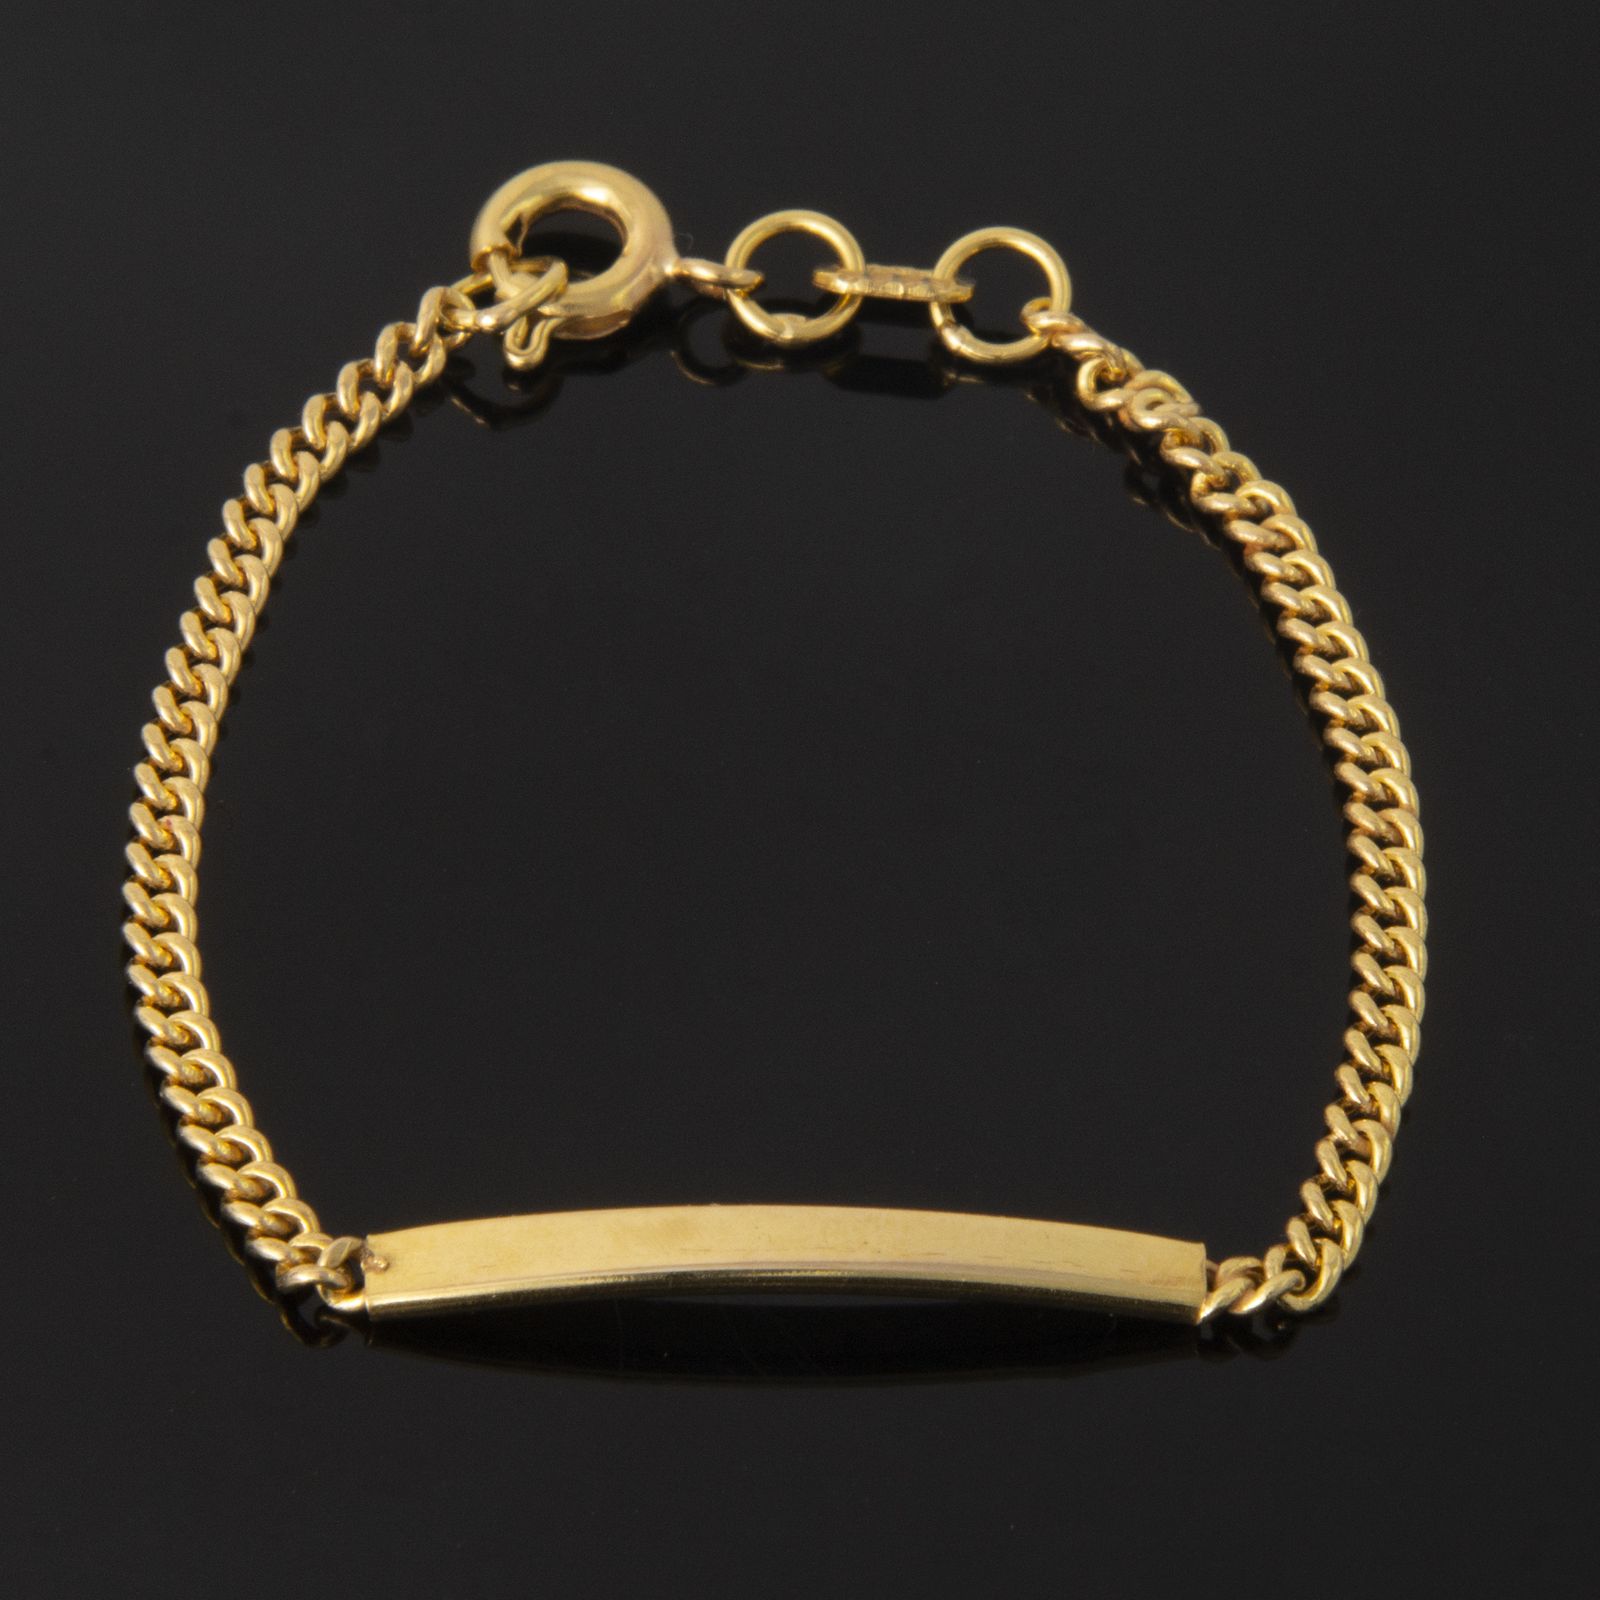  دستبند طلا 18 عیار دخترانه کد 67061 -  - 2